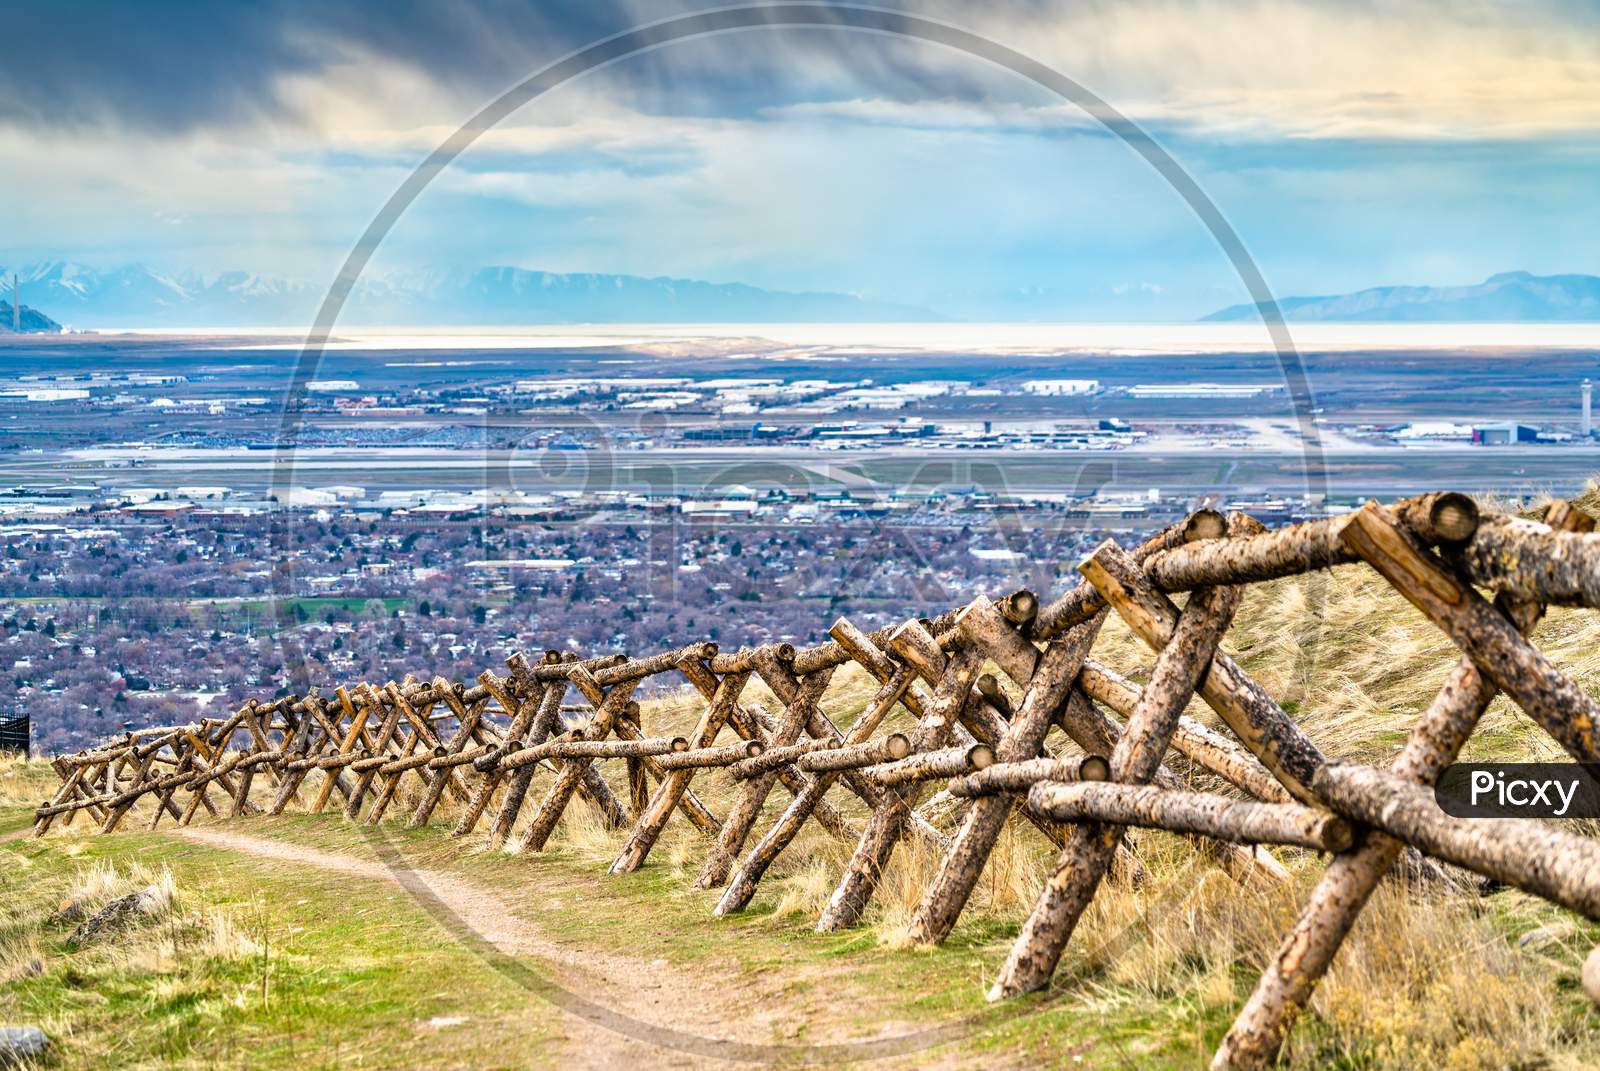 Log Fence At Ensign Peak In Salt Lake City, Utah